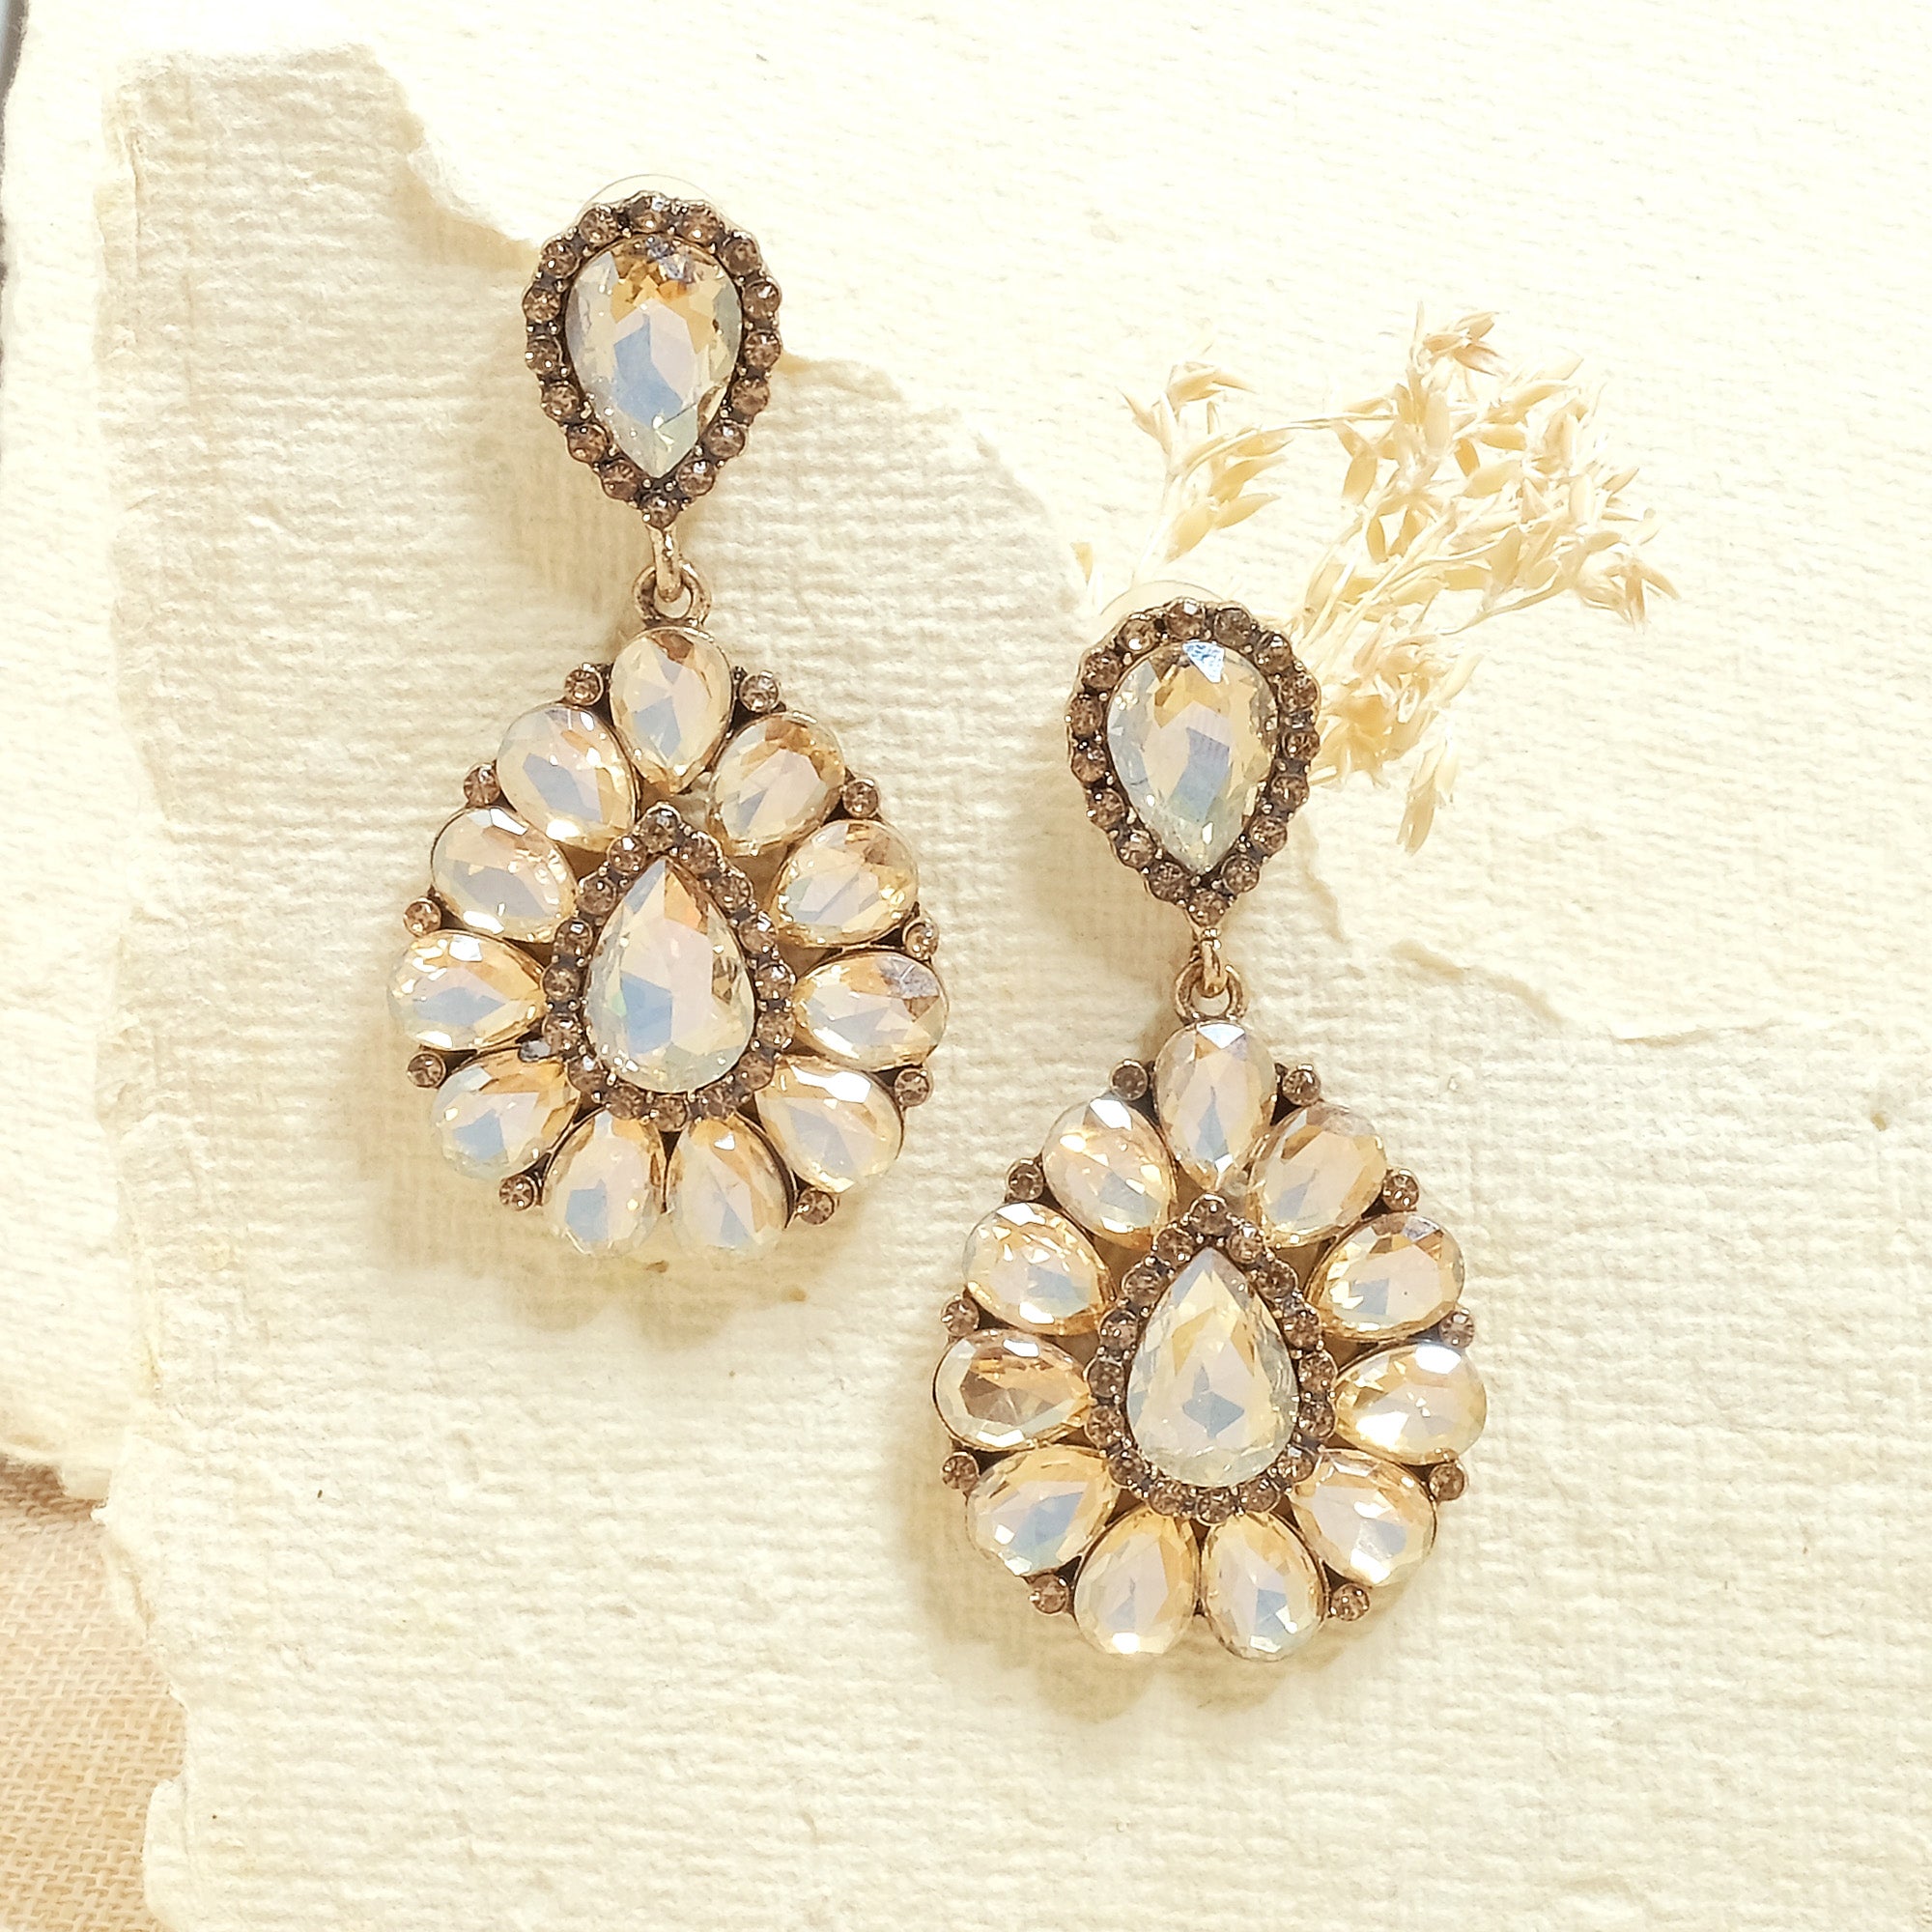 Crystal Pear Earrings